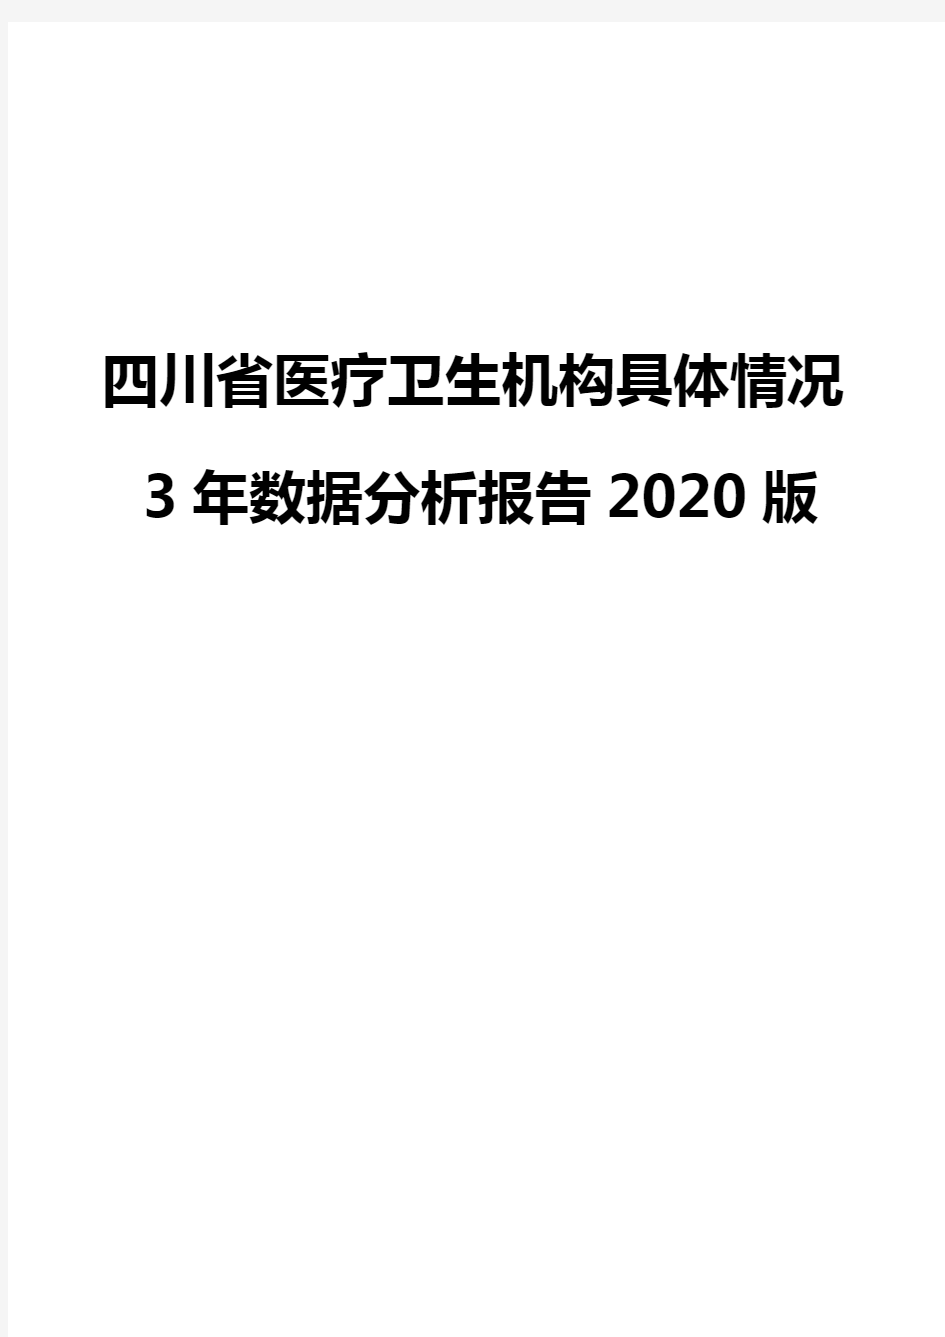 四川省医疗卫生机构具体情况3年数据分析报告2020版